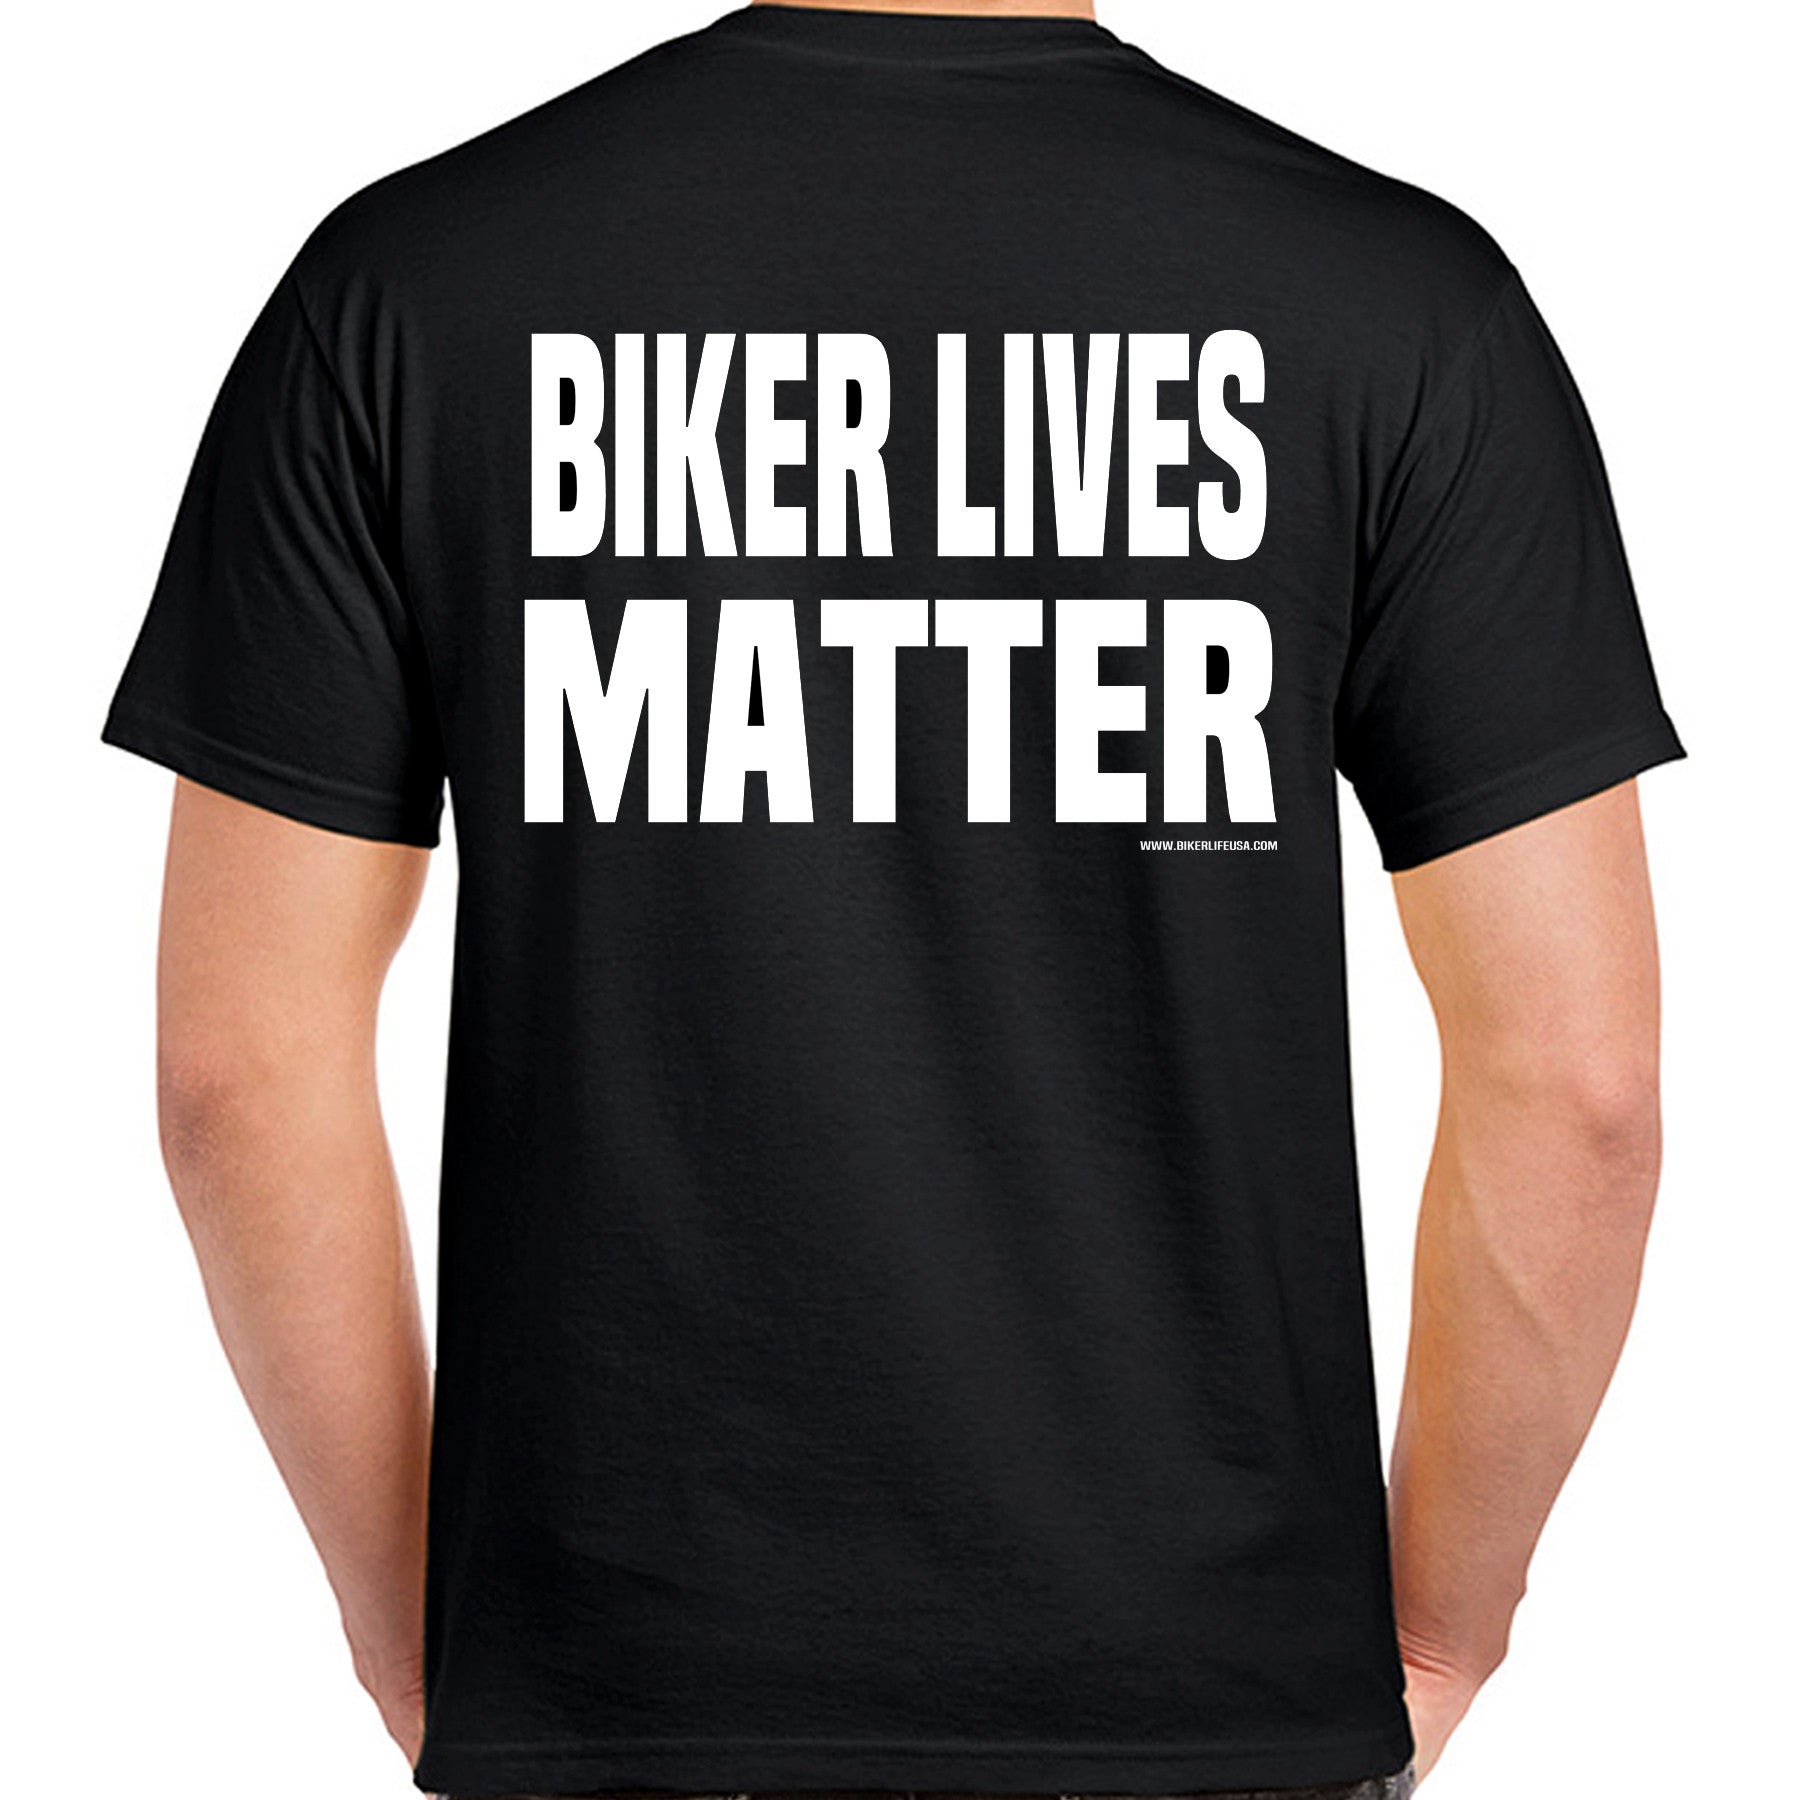 Fat Lives Matter. 3xl shirt, 4xl shirt, 5xl, 6xl' Men's T-Shirt